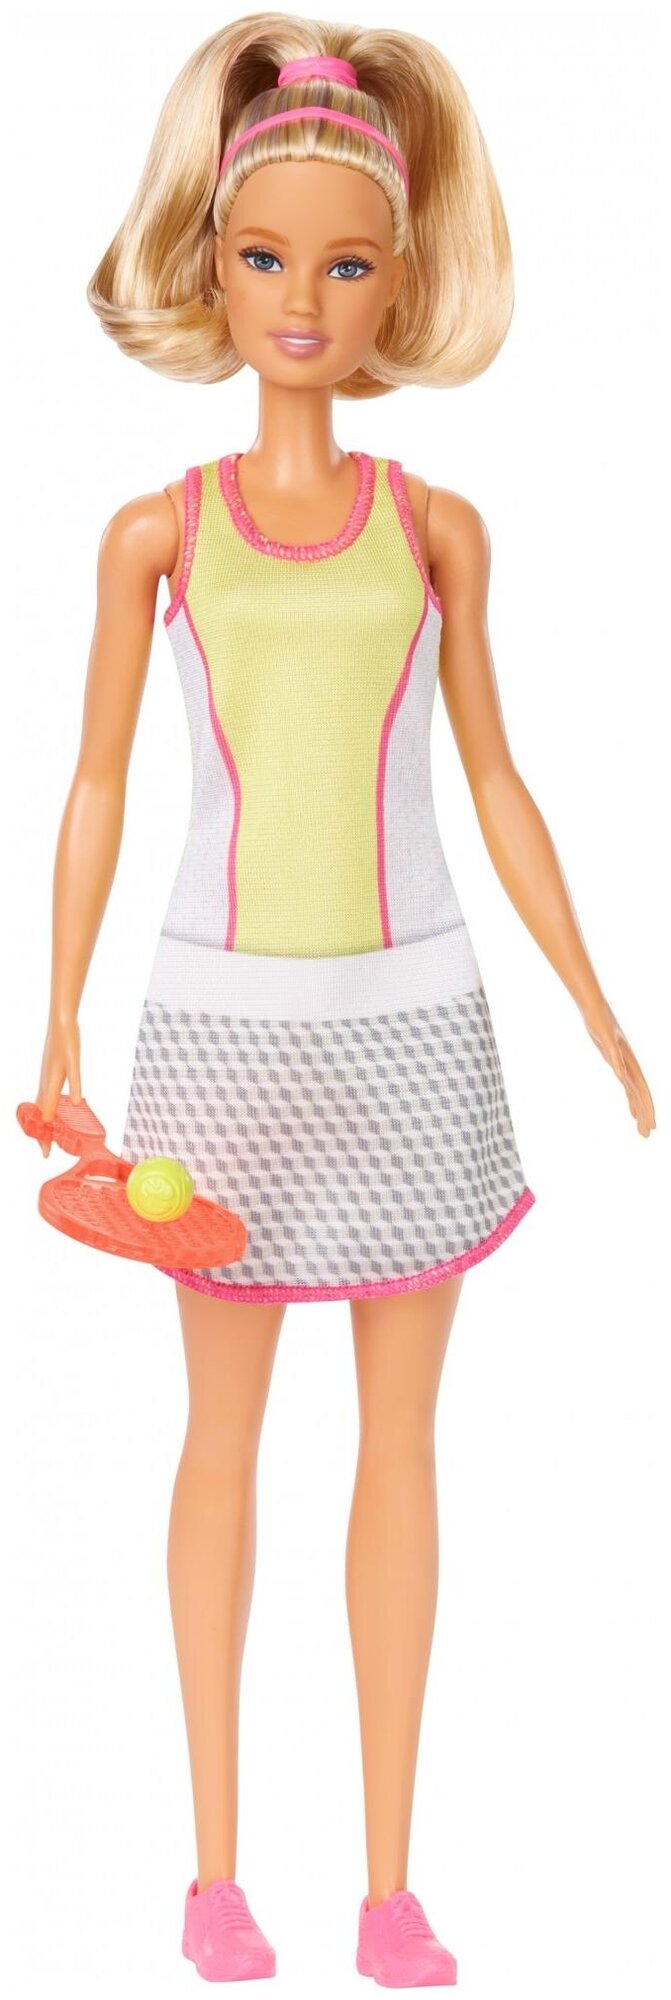 Кукла Barbie Теннисистка, DVF50/GJL65